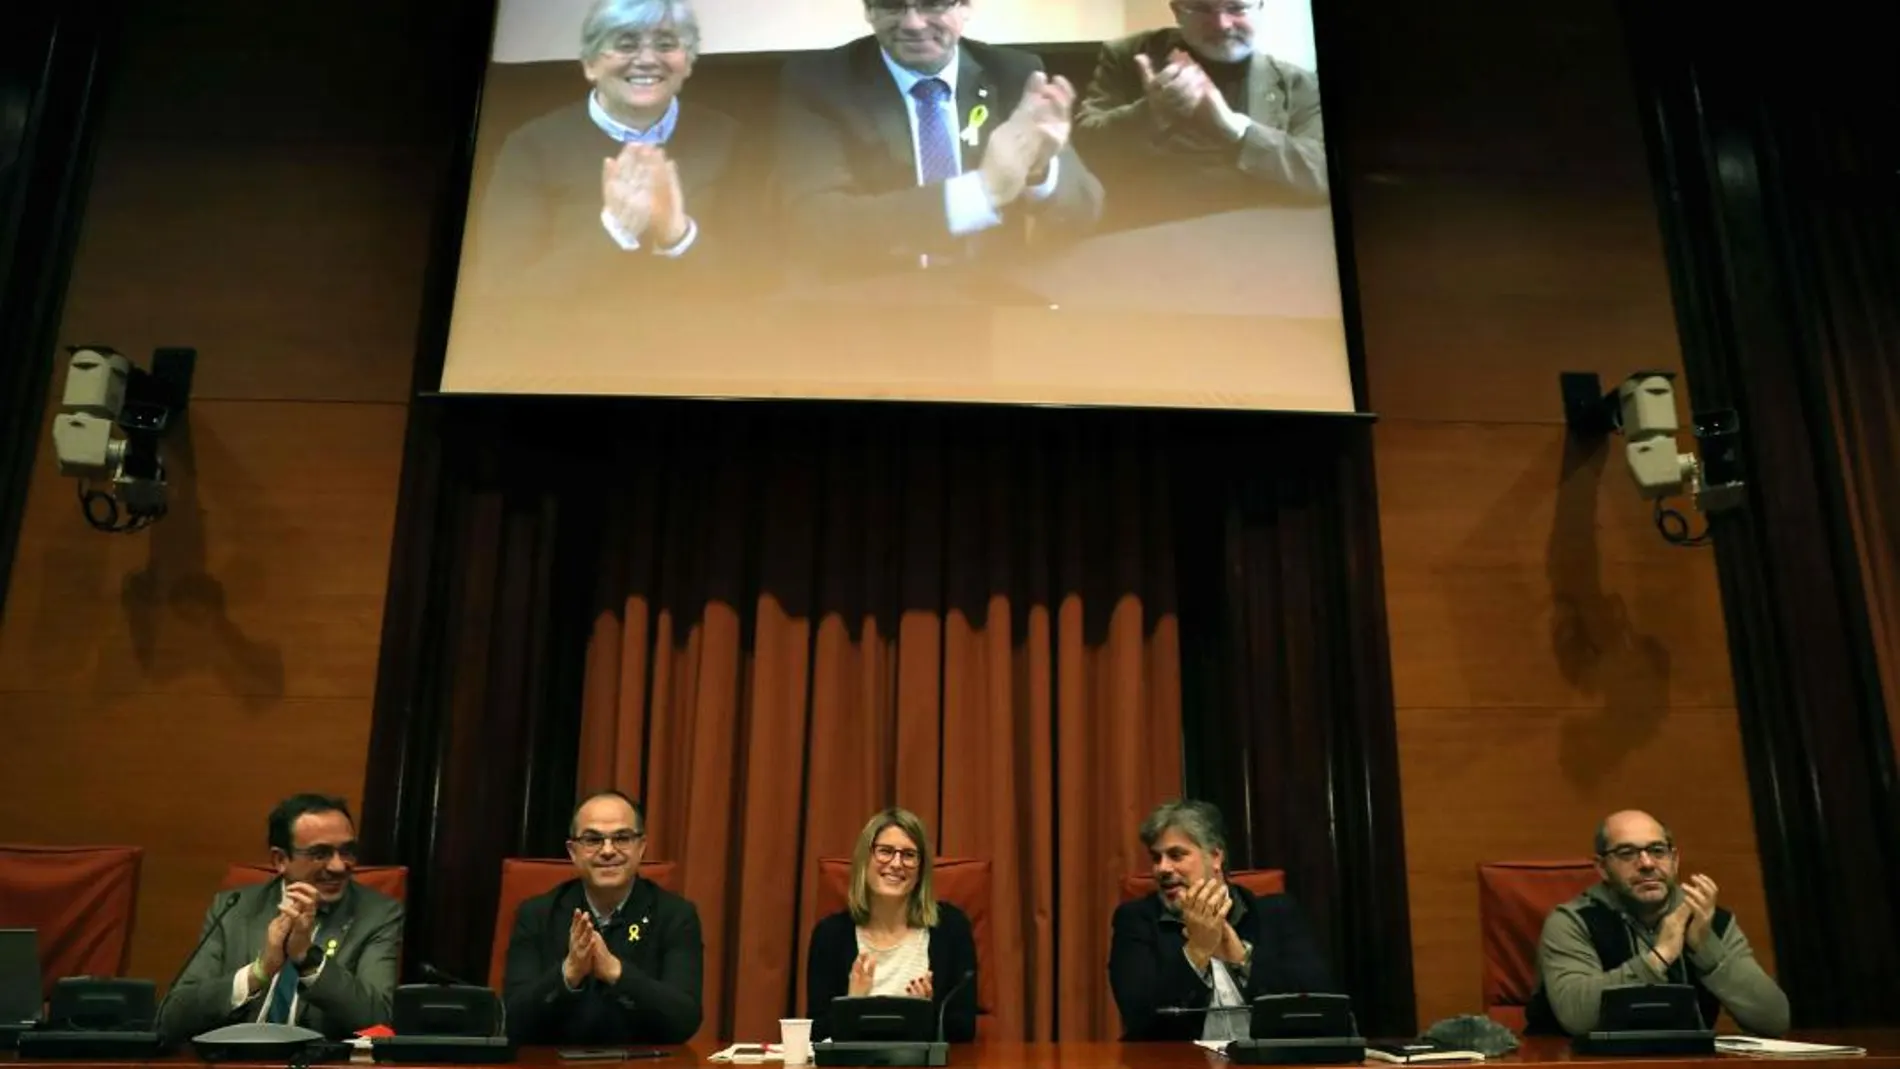 Los diputados electos Carles Puigdemont (c), Clara Pontasí (i) y Lluís Puig (d), participaron telemáticamente desde Bruselas en la reunión celebrada en el Parlament por el grupo parlamentario de Junts per Catalunya